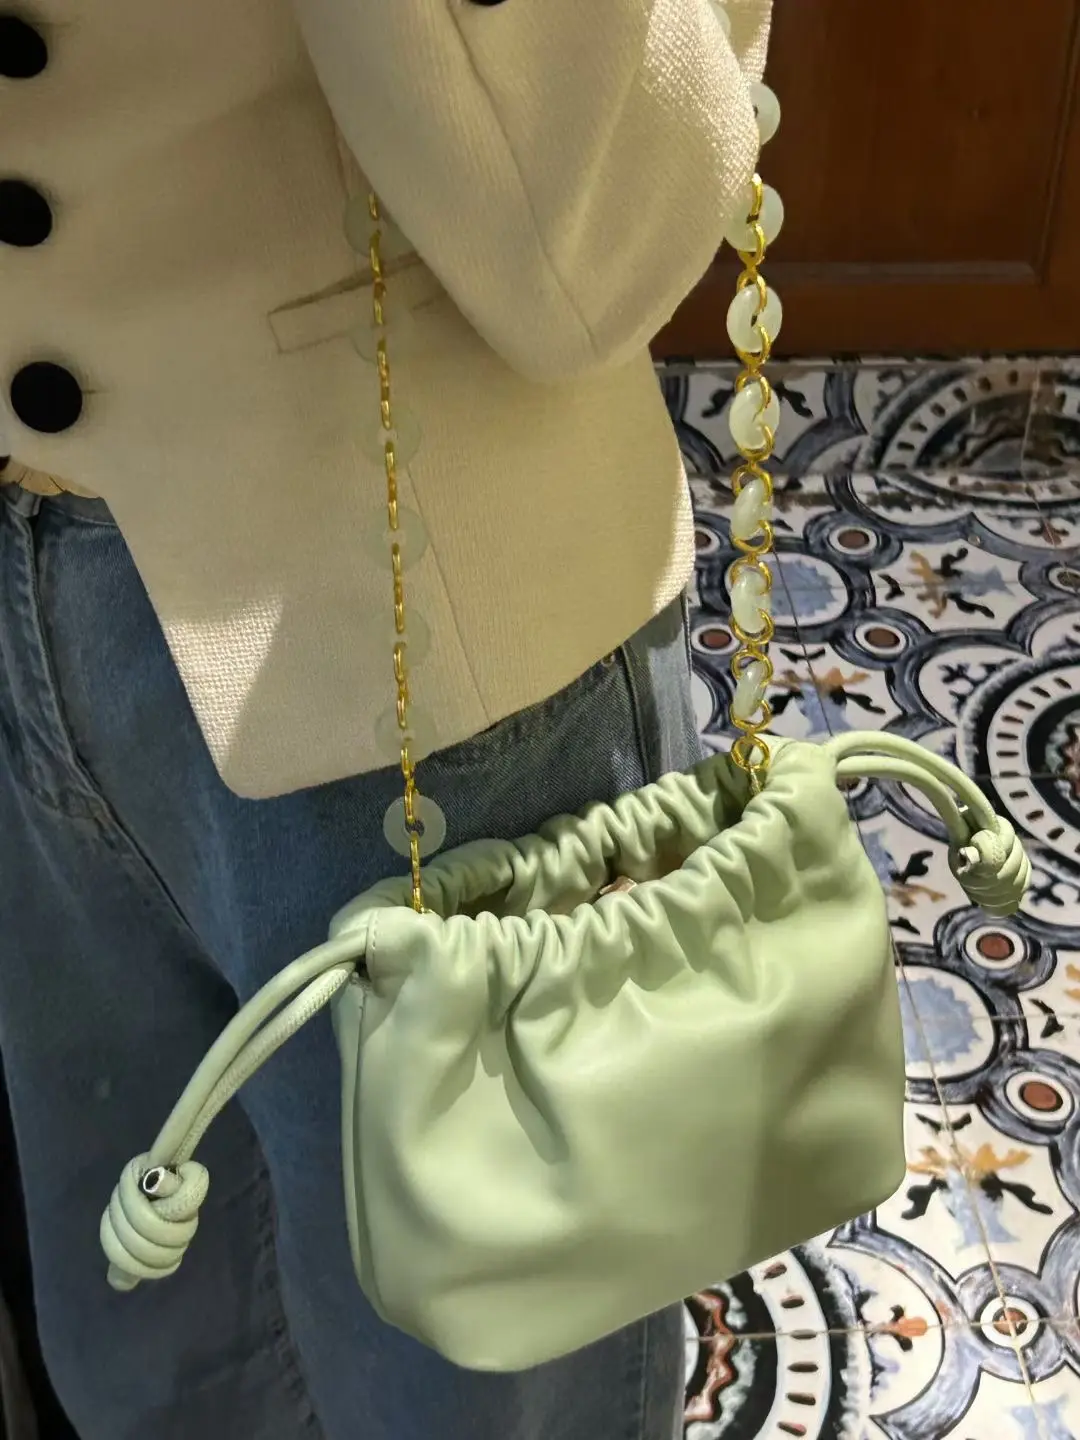 Nolvo dünya 70.5cm lüks tasarım Metal zincir kadınlar için boncuk ile omuzdan askili çanta alaşım zincir kayış Lady çanta cüzdanlar yapma